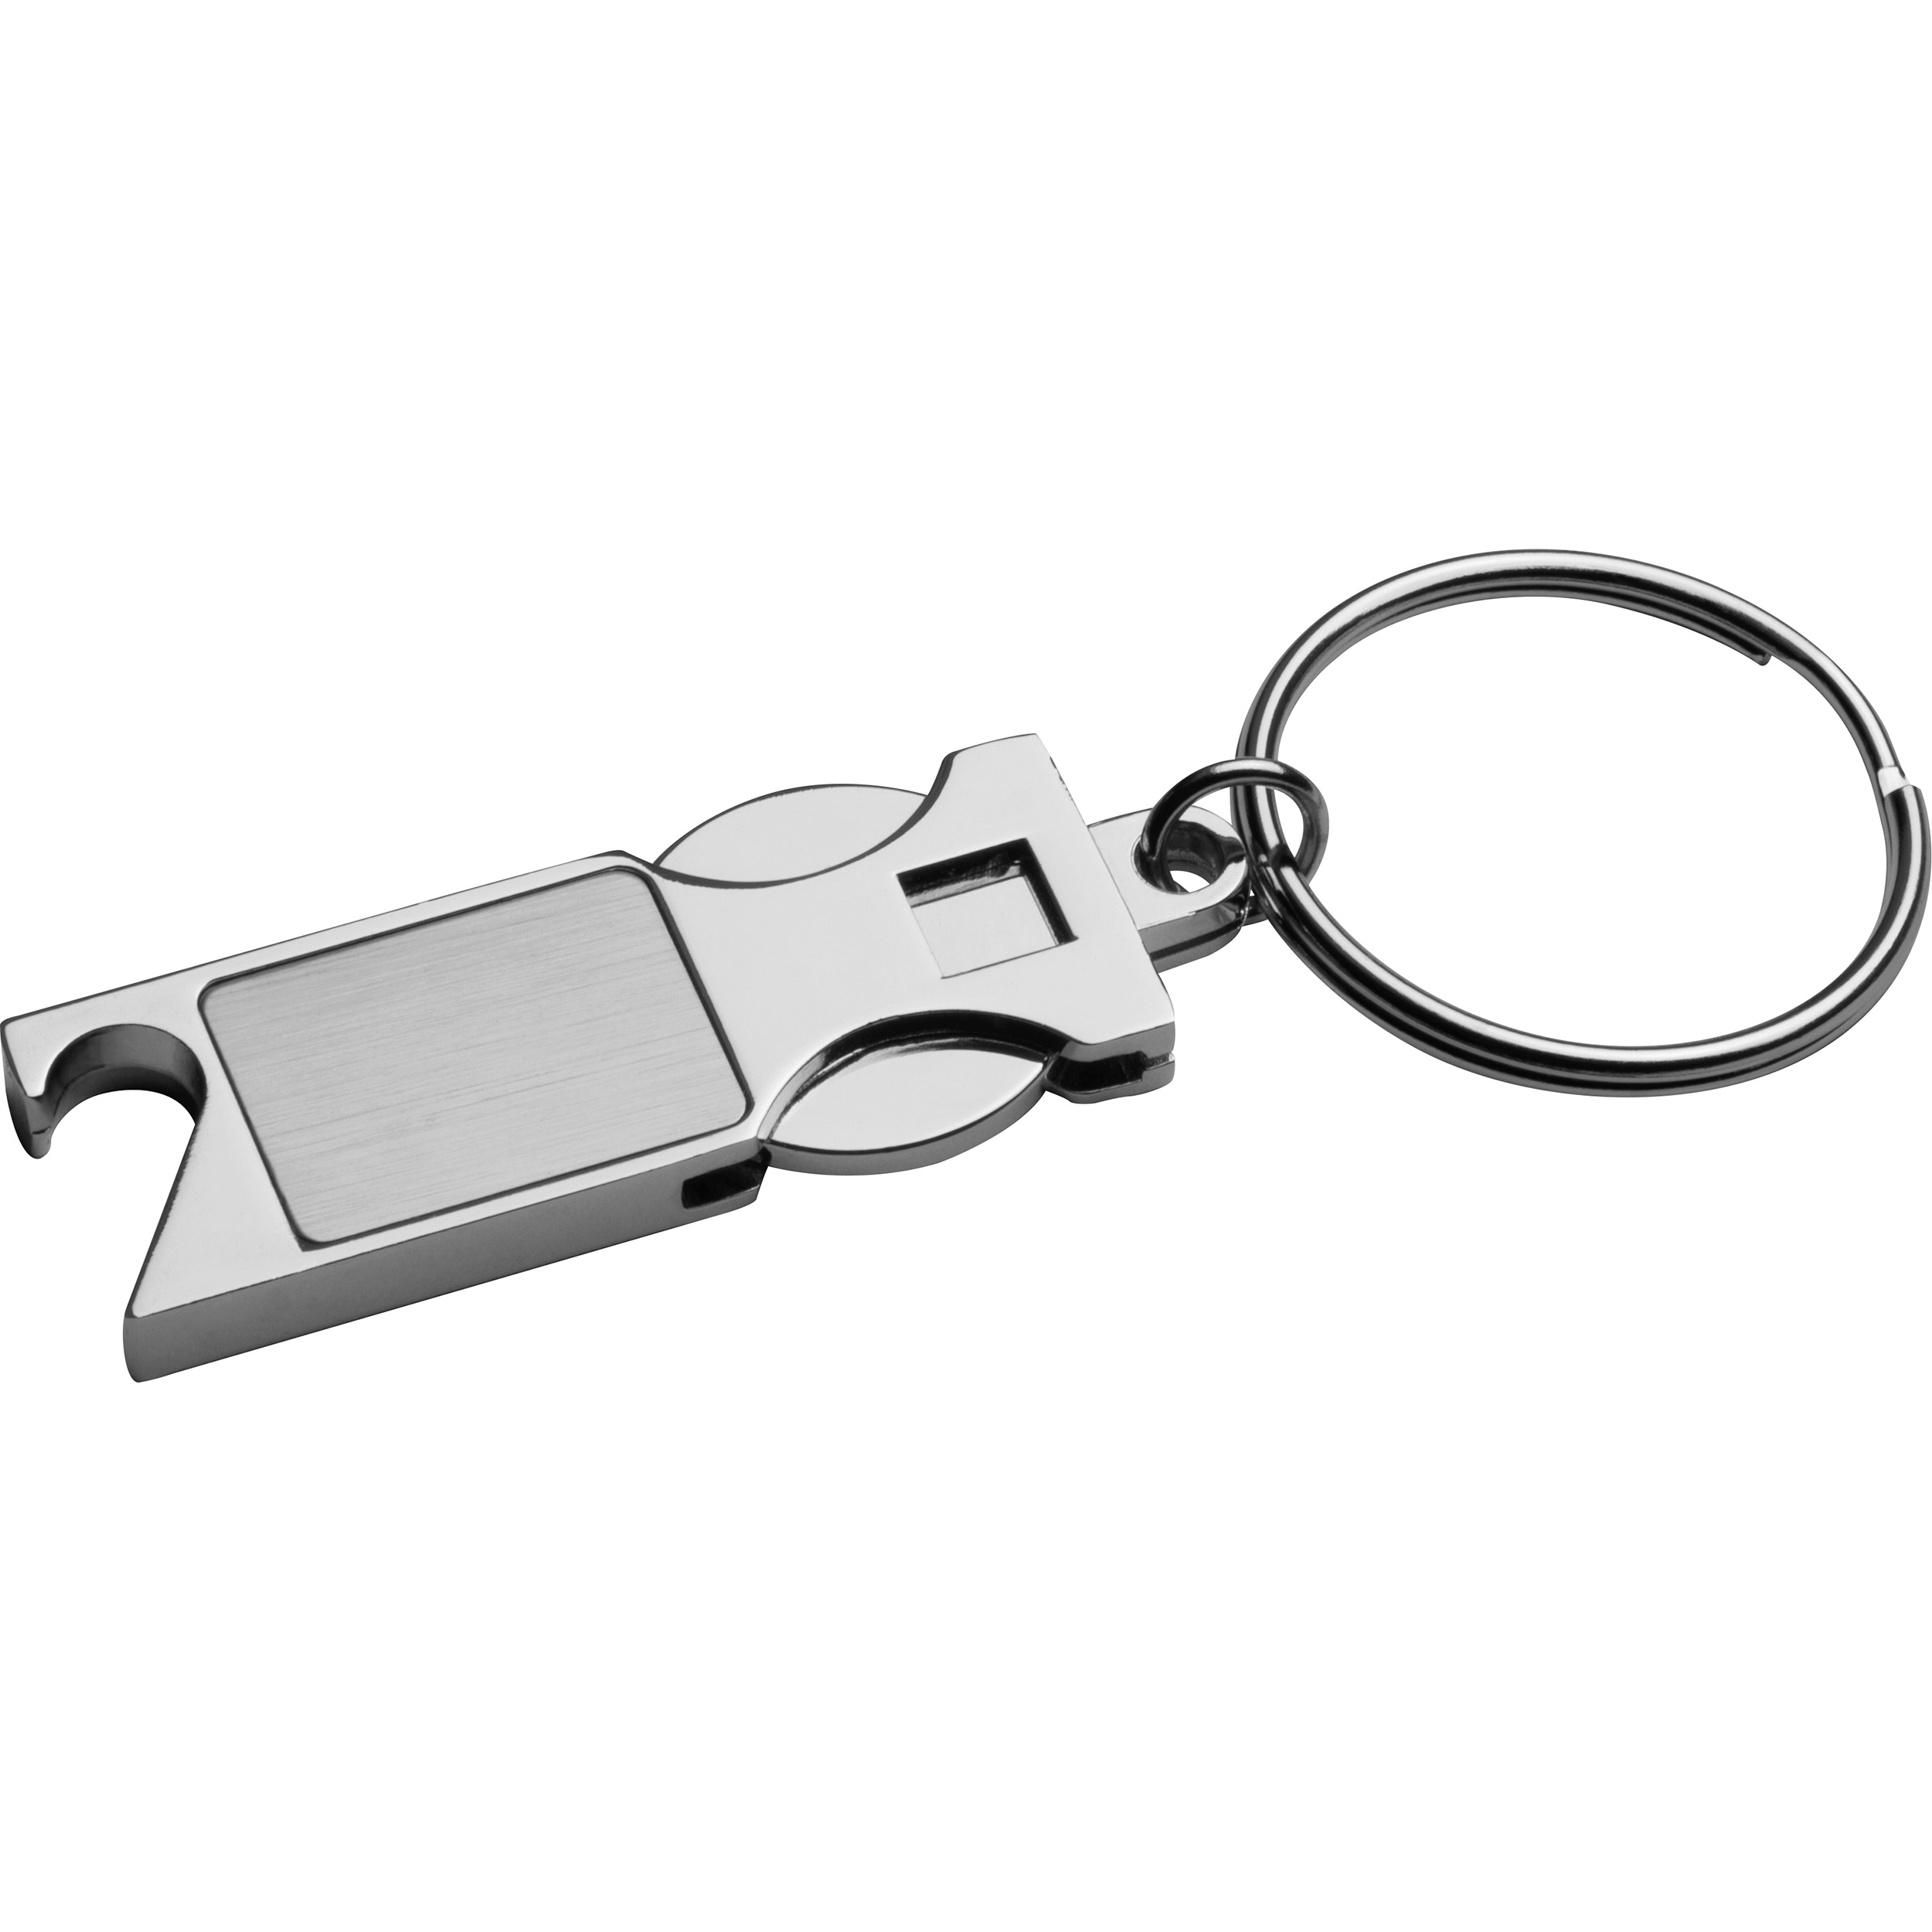 Porte-clés en métal gravé avec pièce pour caddie et décapsuleur - Bourg-en-Bresse - Zaprinta France